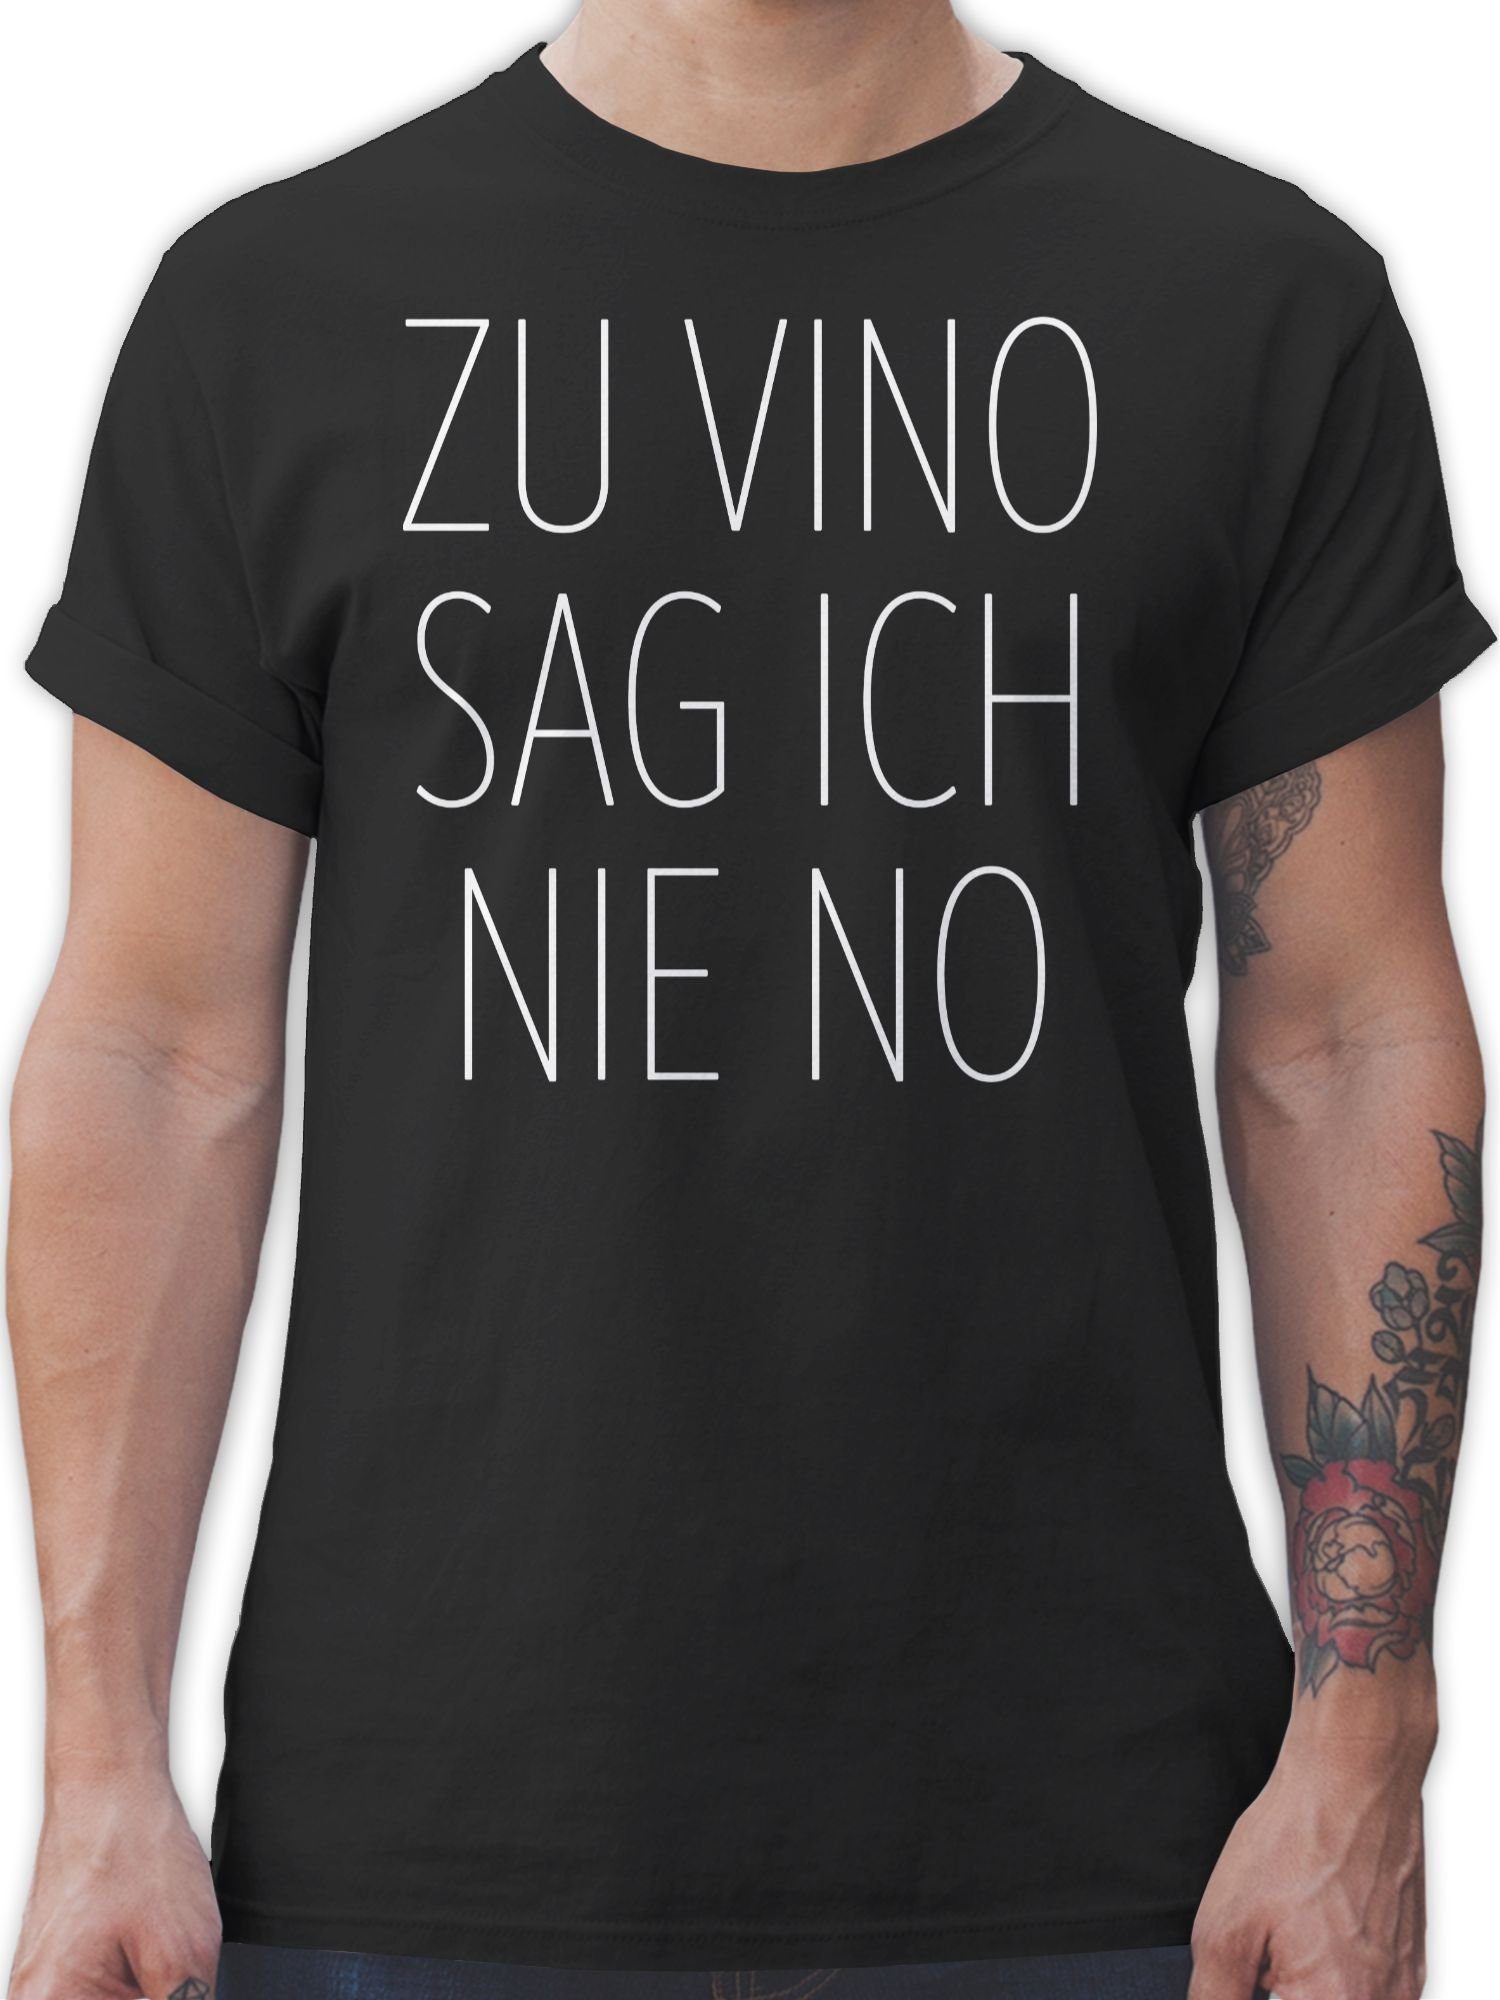 Shirtracer T-Shirt Zu Vino sag ich nie No weiß Sprüche Statement mit Spruch 01 Schwarz